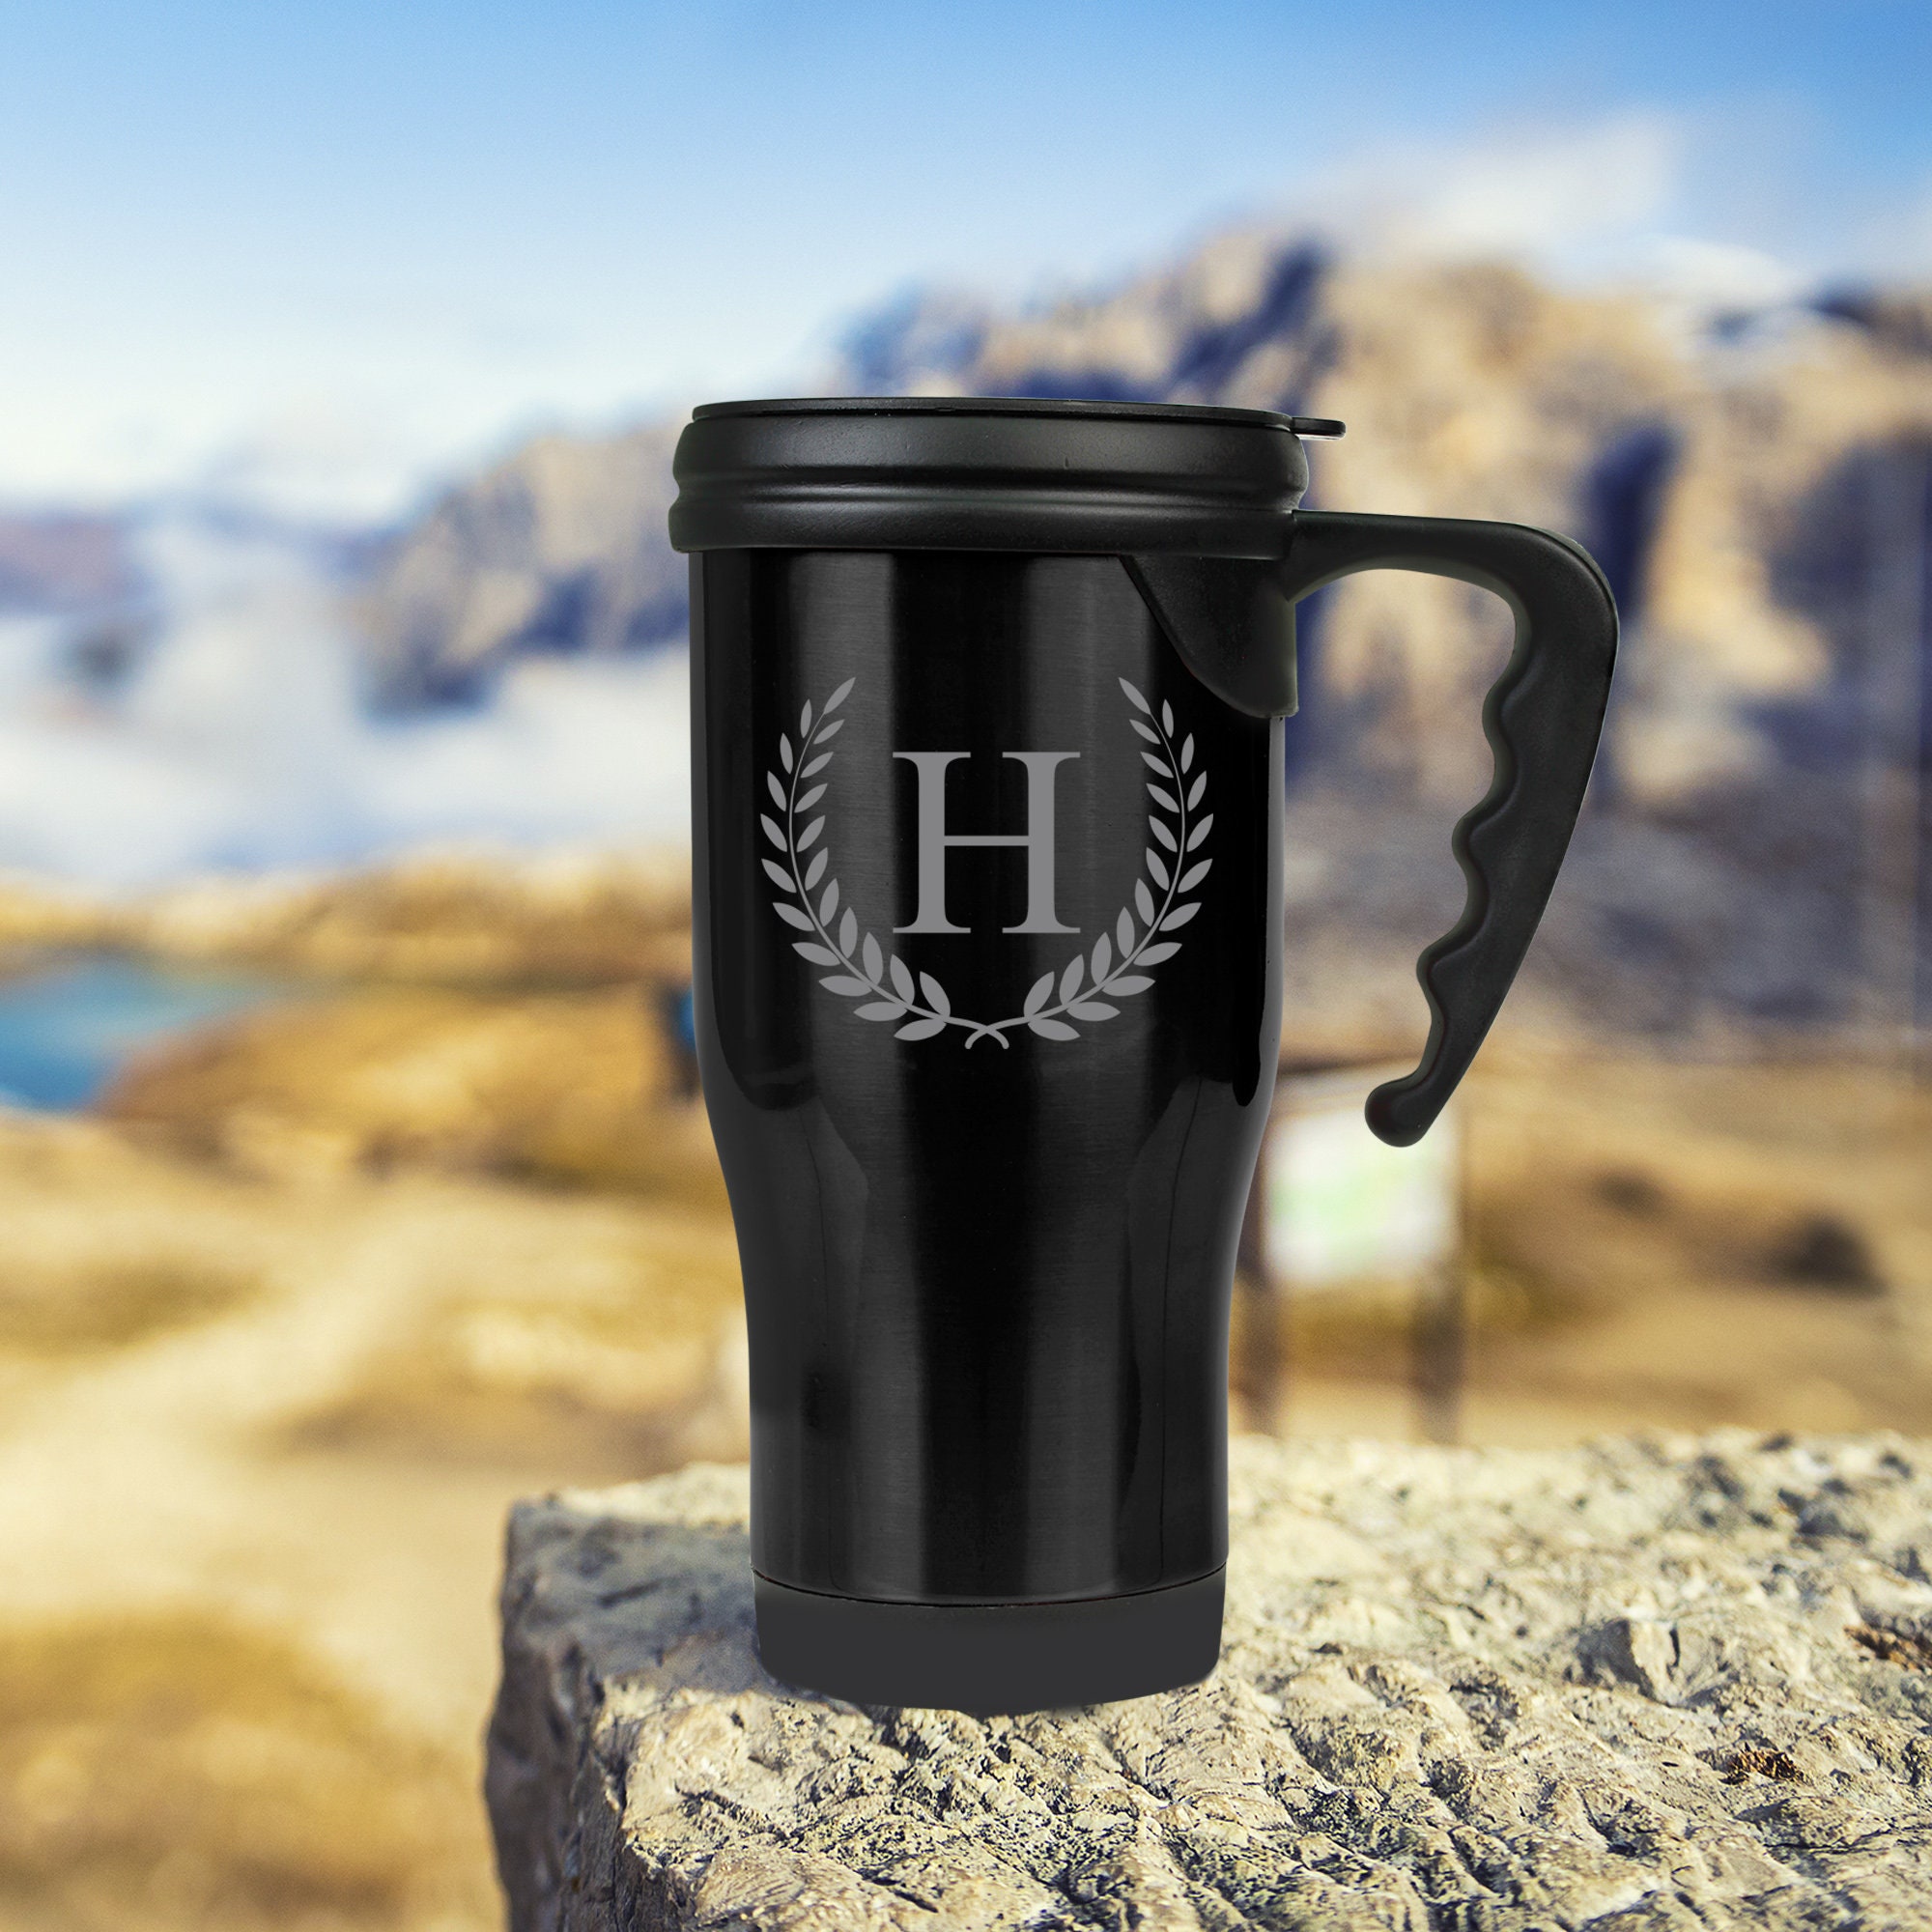 small travel mug with handle